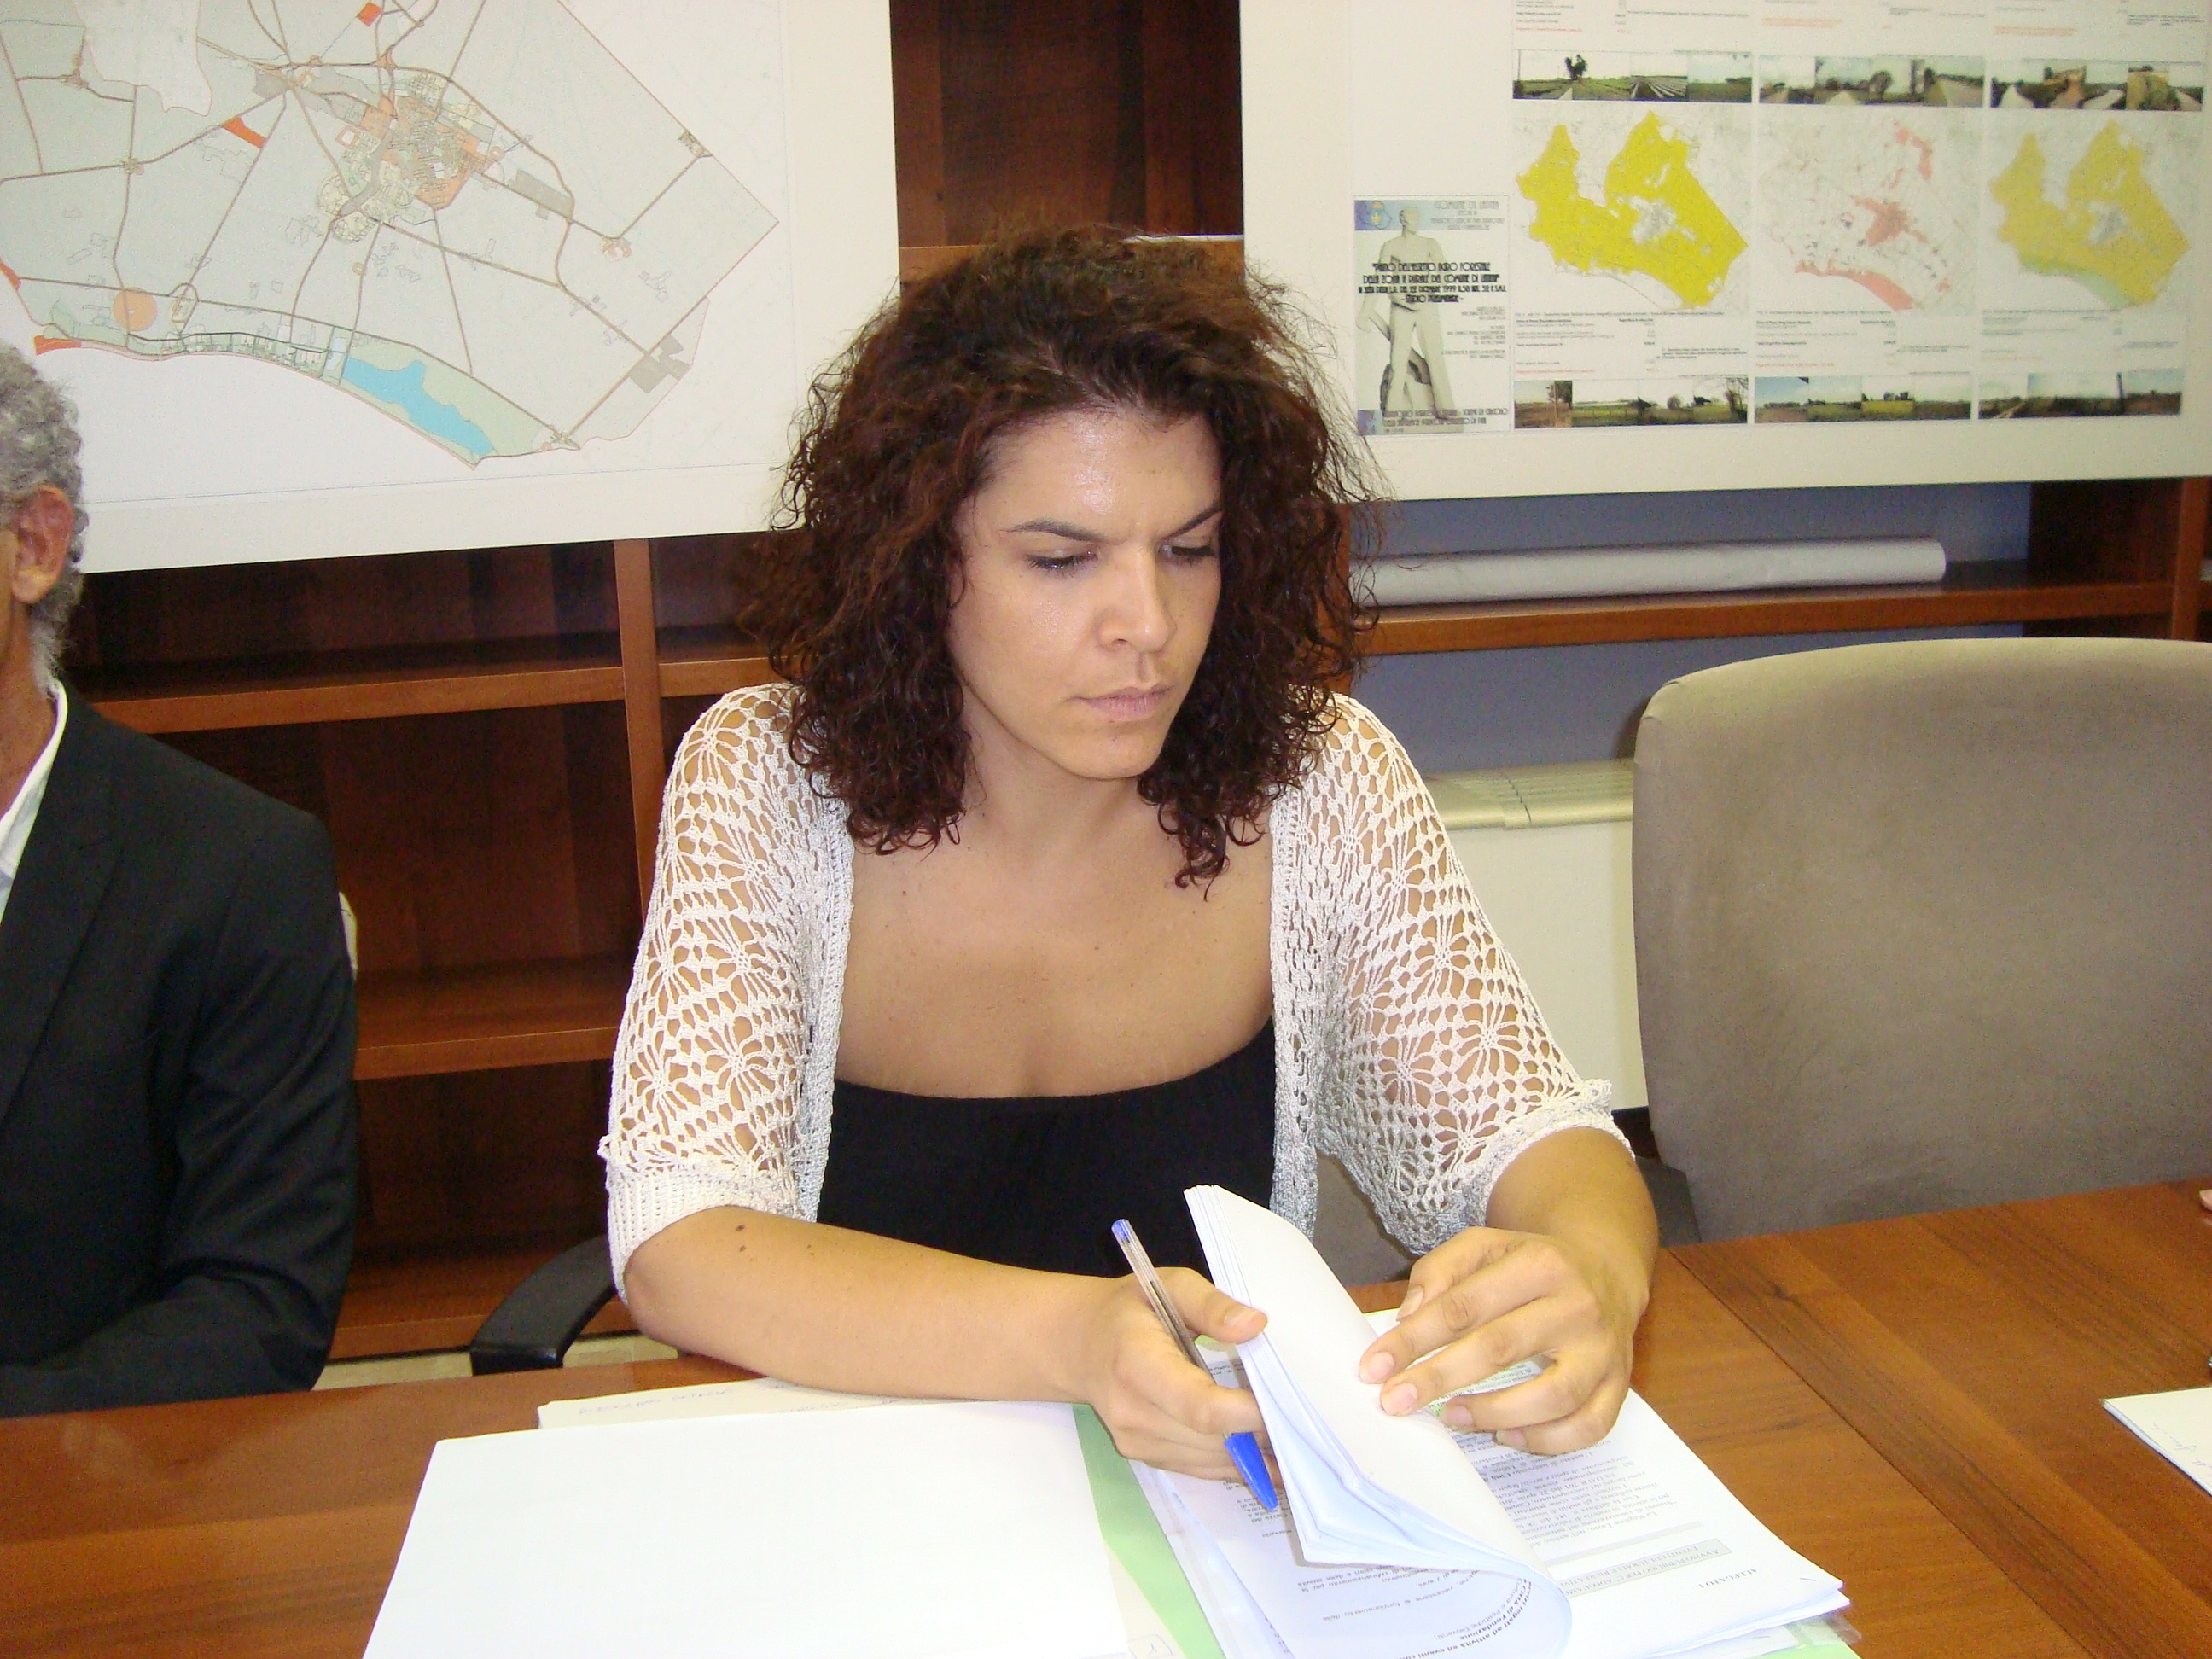 Cristina Leggio